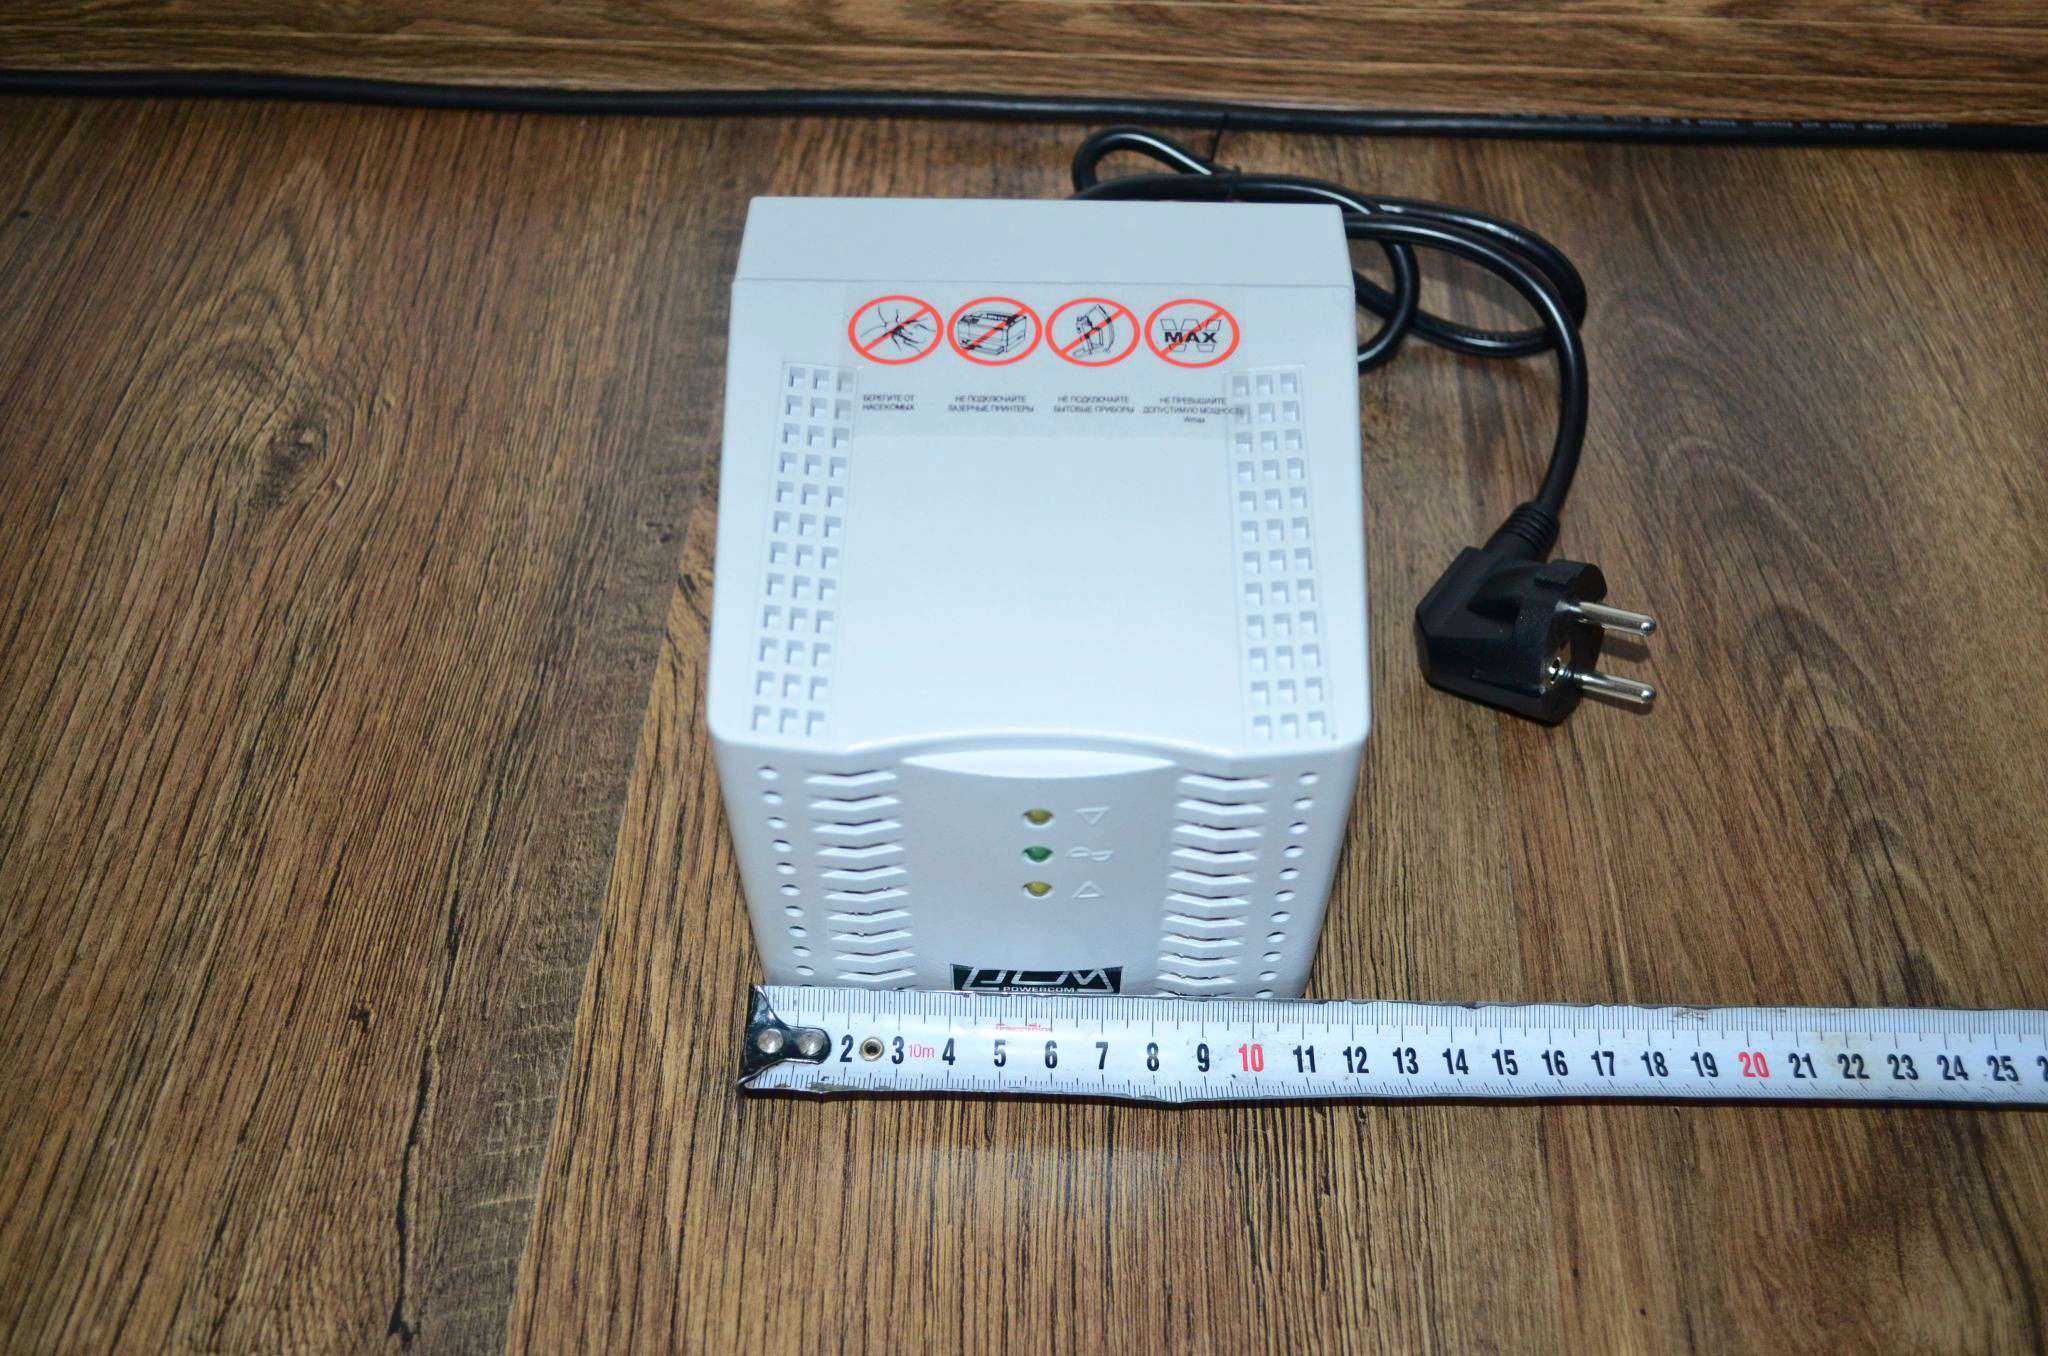 Powercom powercom tca-2000 (1315963) купить за 1990 руб в новосибирске, отзывы, видео обзоры